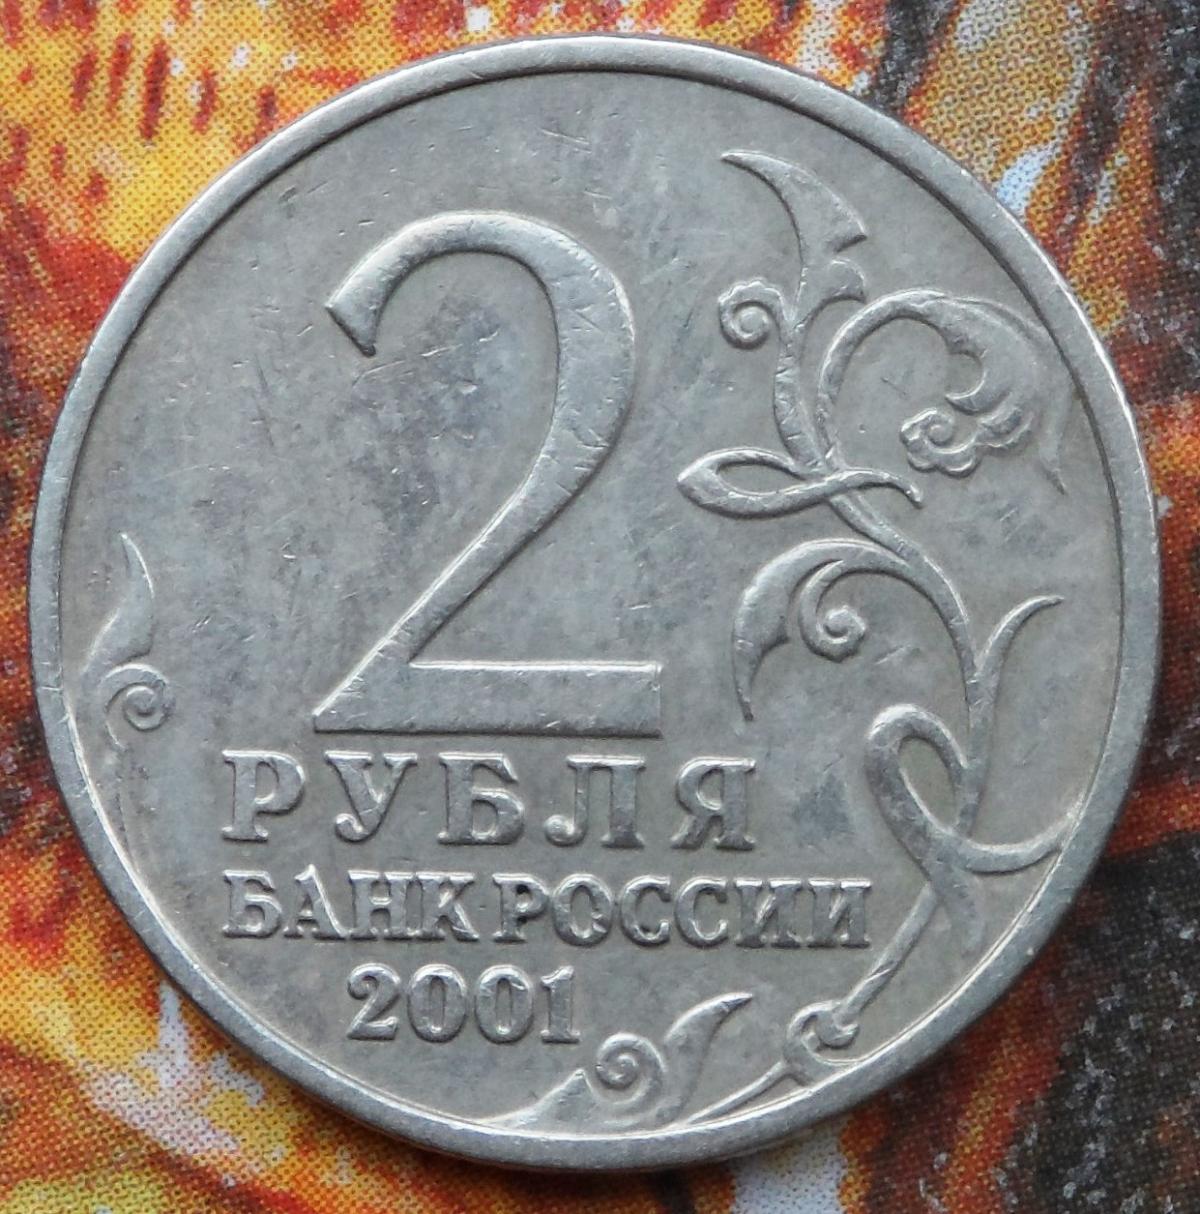 2 рубля 2001 года с гагариным. Монета с Гагариным 2 рубля 2001. 2 Рубля Гагарин без знака монетного двора 2001. Монета призрак 2 рубля 2001. Знак монетного двора на 2 рубля.